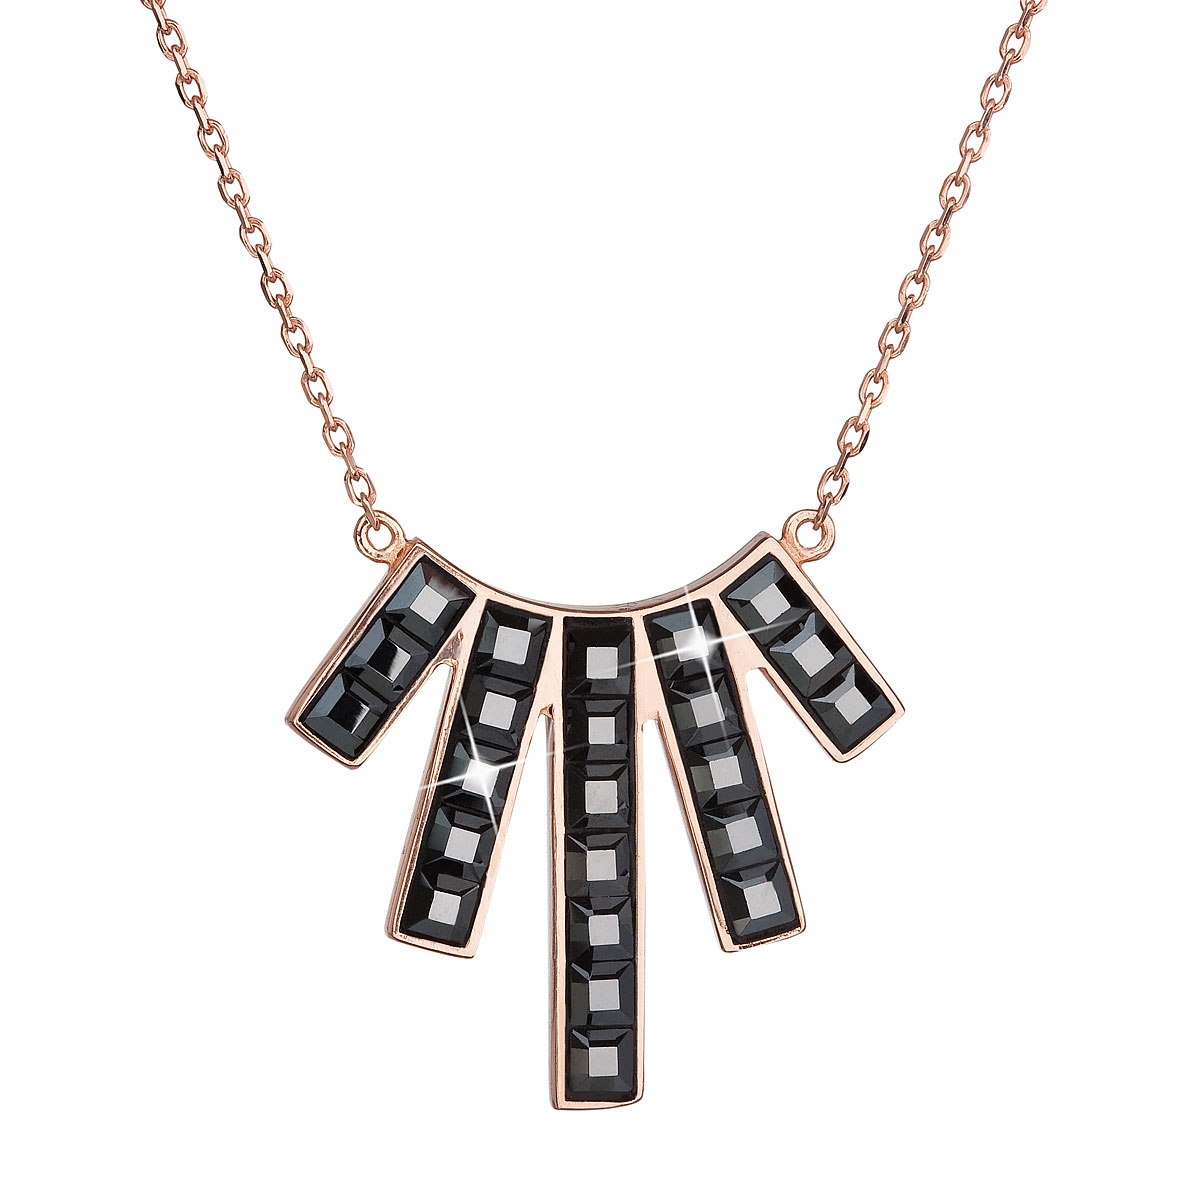 Pozlátený strieborný náhrdelník s kryštálmi Crystals from Swarovski ® Black